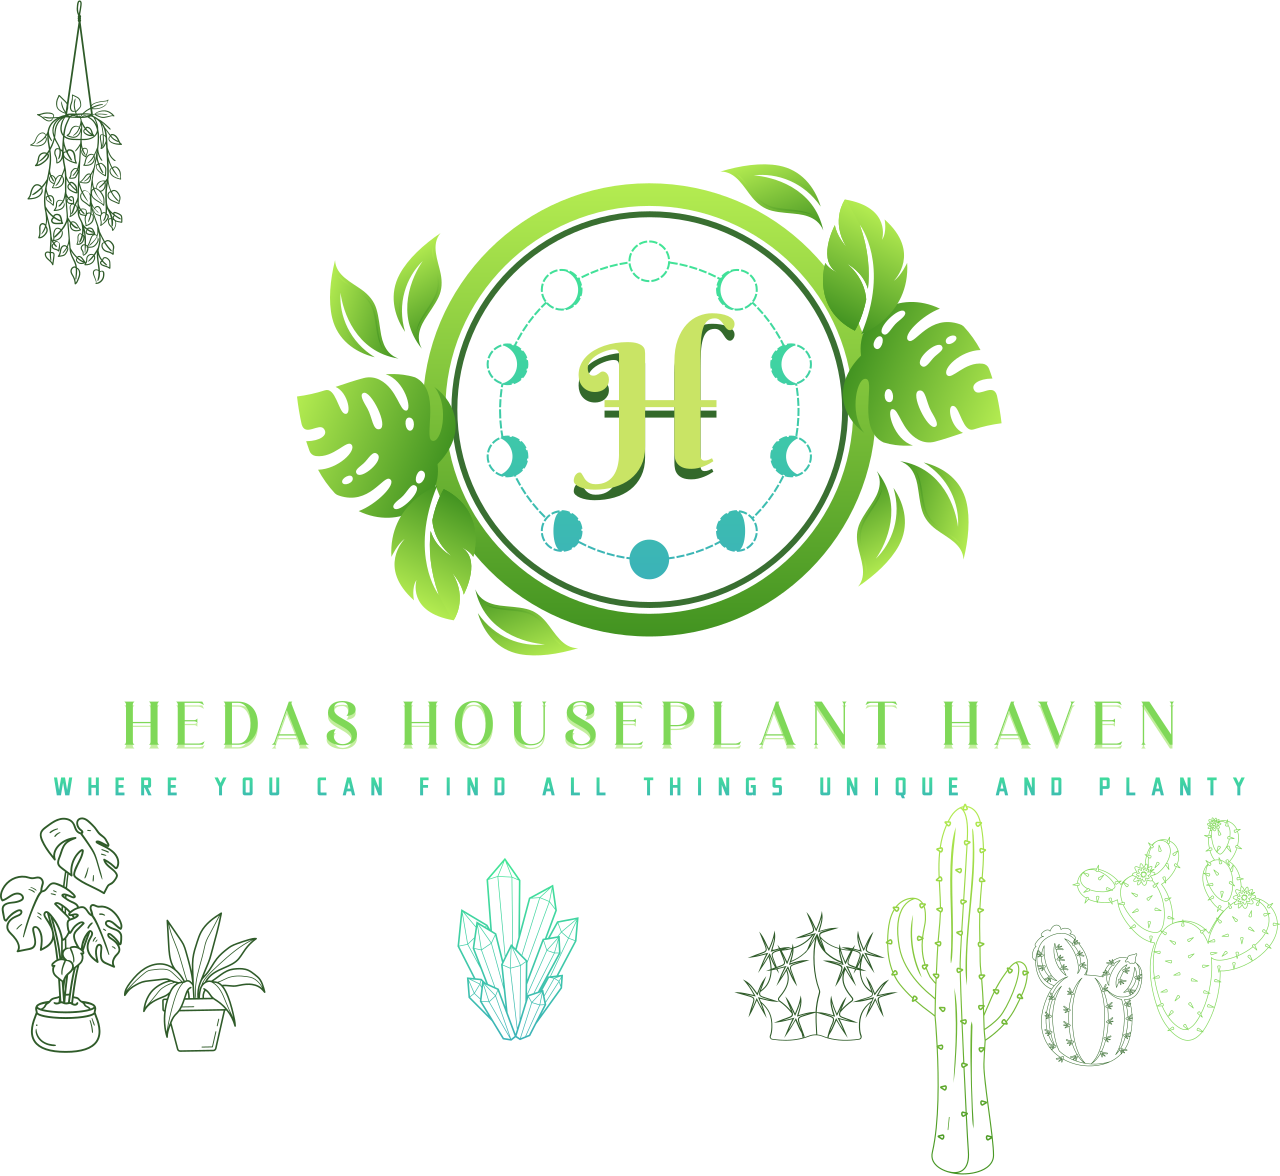 Hedas Houseplant Haven's logo